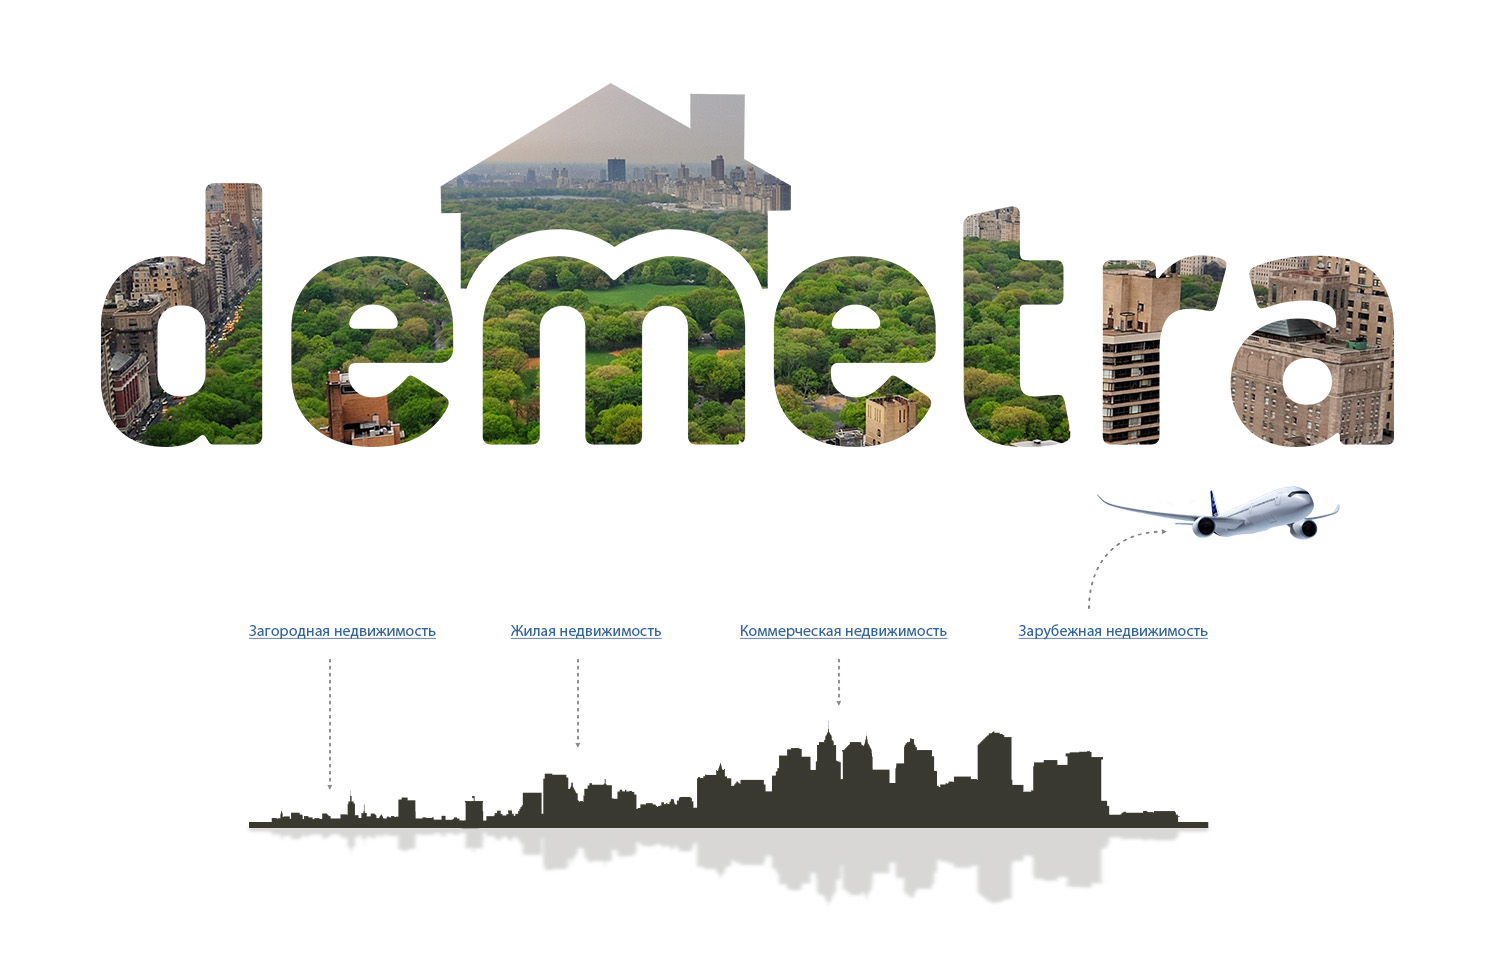 «Demetra Development» — это загородная, коммерческая, жилая и зарубежная недвижимость